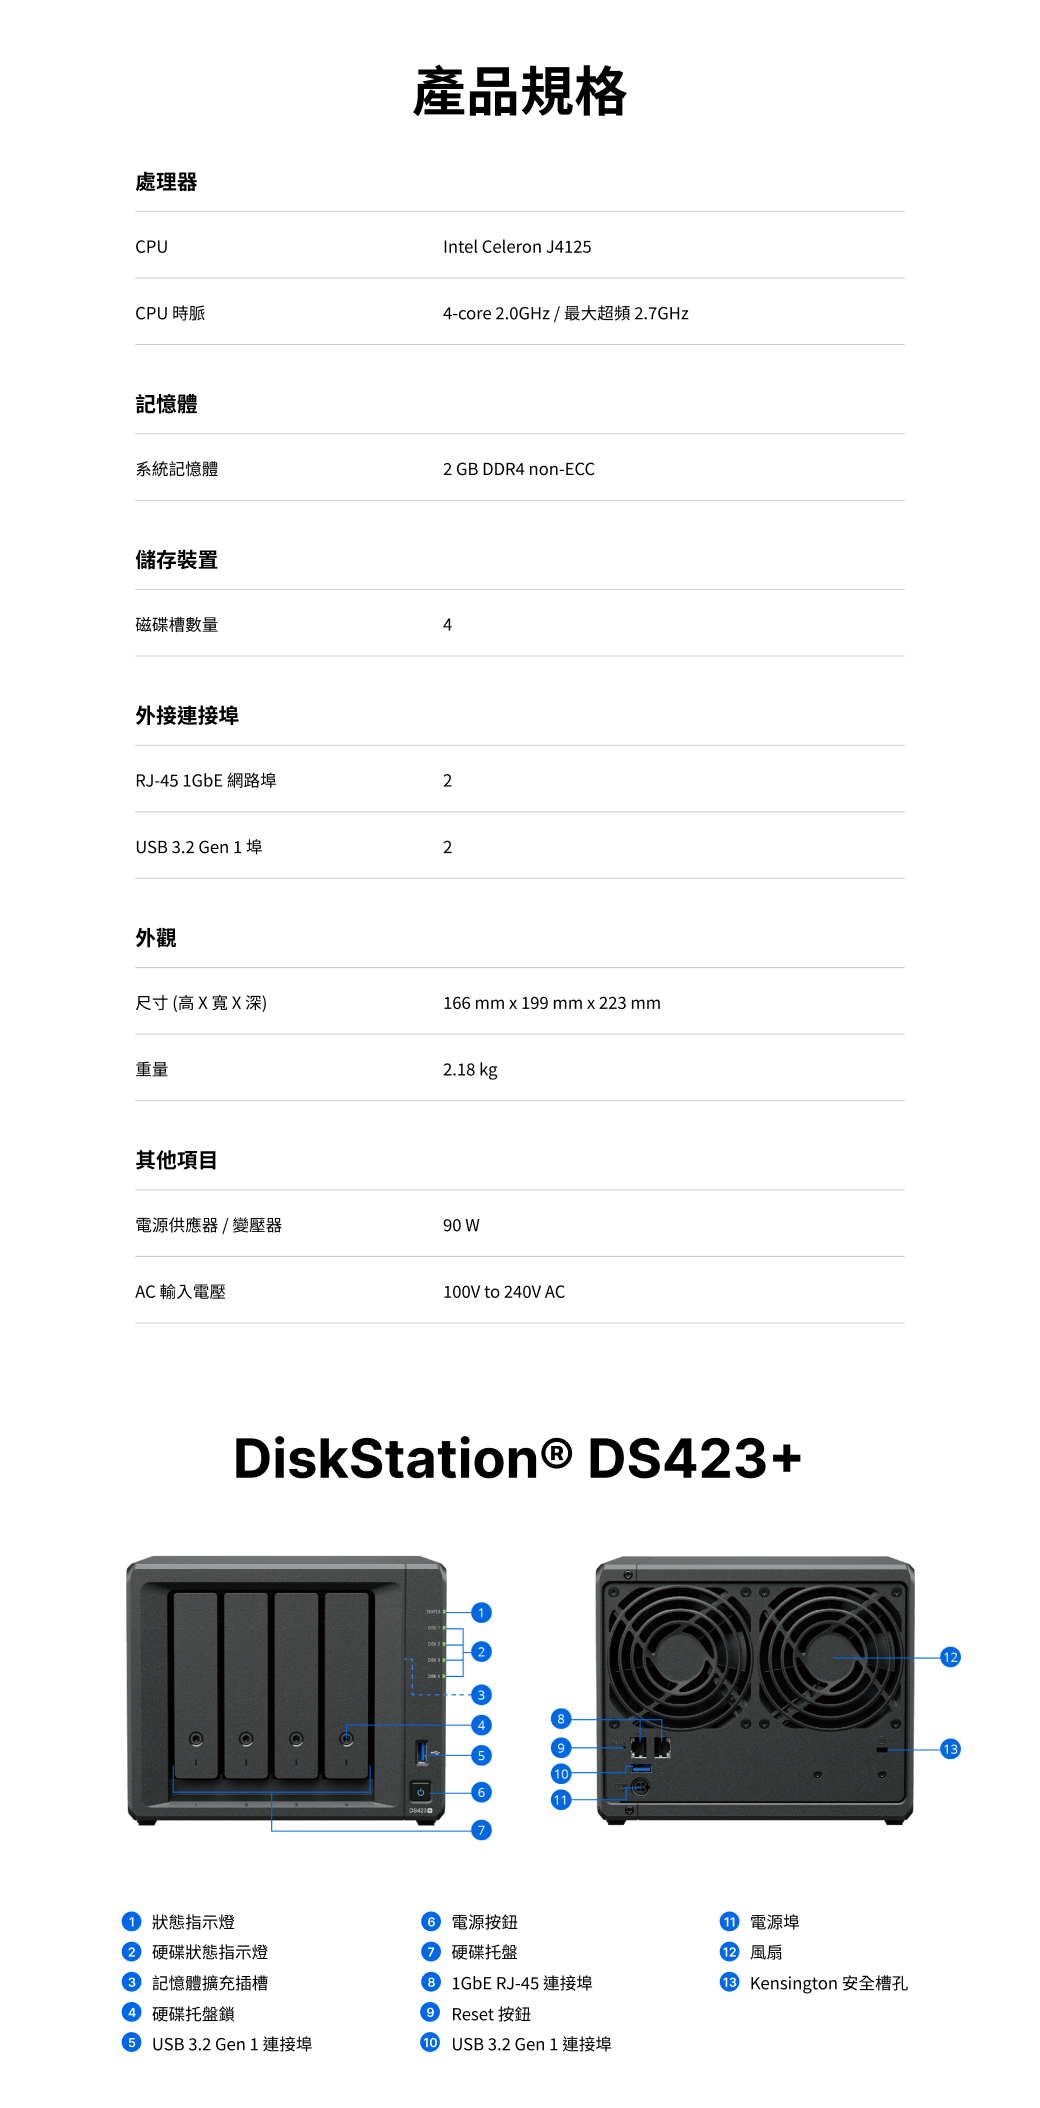 Bz~WCPUIntel Celeron J425CPUɯ4-core 2.0GHz /̤jWW2.7GHzOtΰO2 GB DDR4 non-ECCxs˸mϺмѼƶq4~sRJ-45 1GbE 2USB 3.2 Gen 1 2~[ؤo(X eX `)16 mm x 199 mm x 223 mmq2.18 kgLعq/90 WAC Jq100V to 240V ACDiskStation® DS423+1 AܿO wЪAܿO OXR wЦL USB 3.2 Gen 1 s6 qs wЦL 1GbE RJ-45 s Resets USB3.2 Gen 1 sq  Kensington wѤ